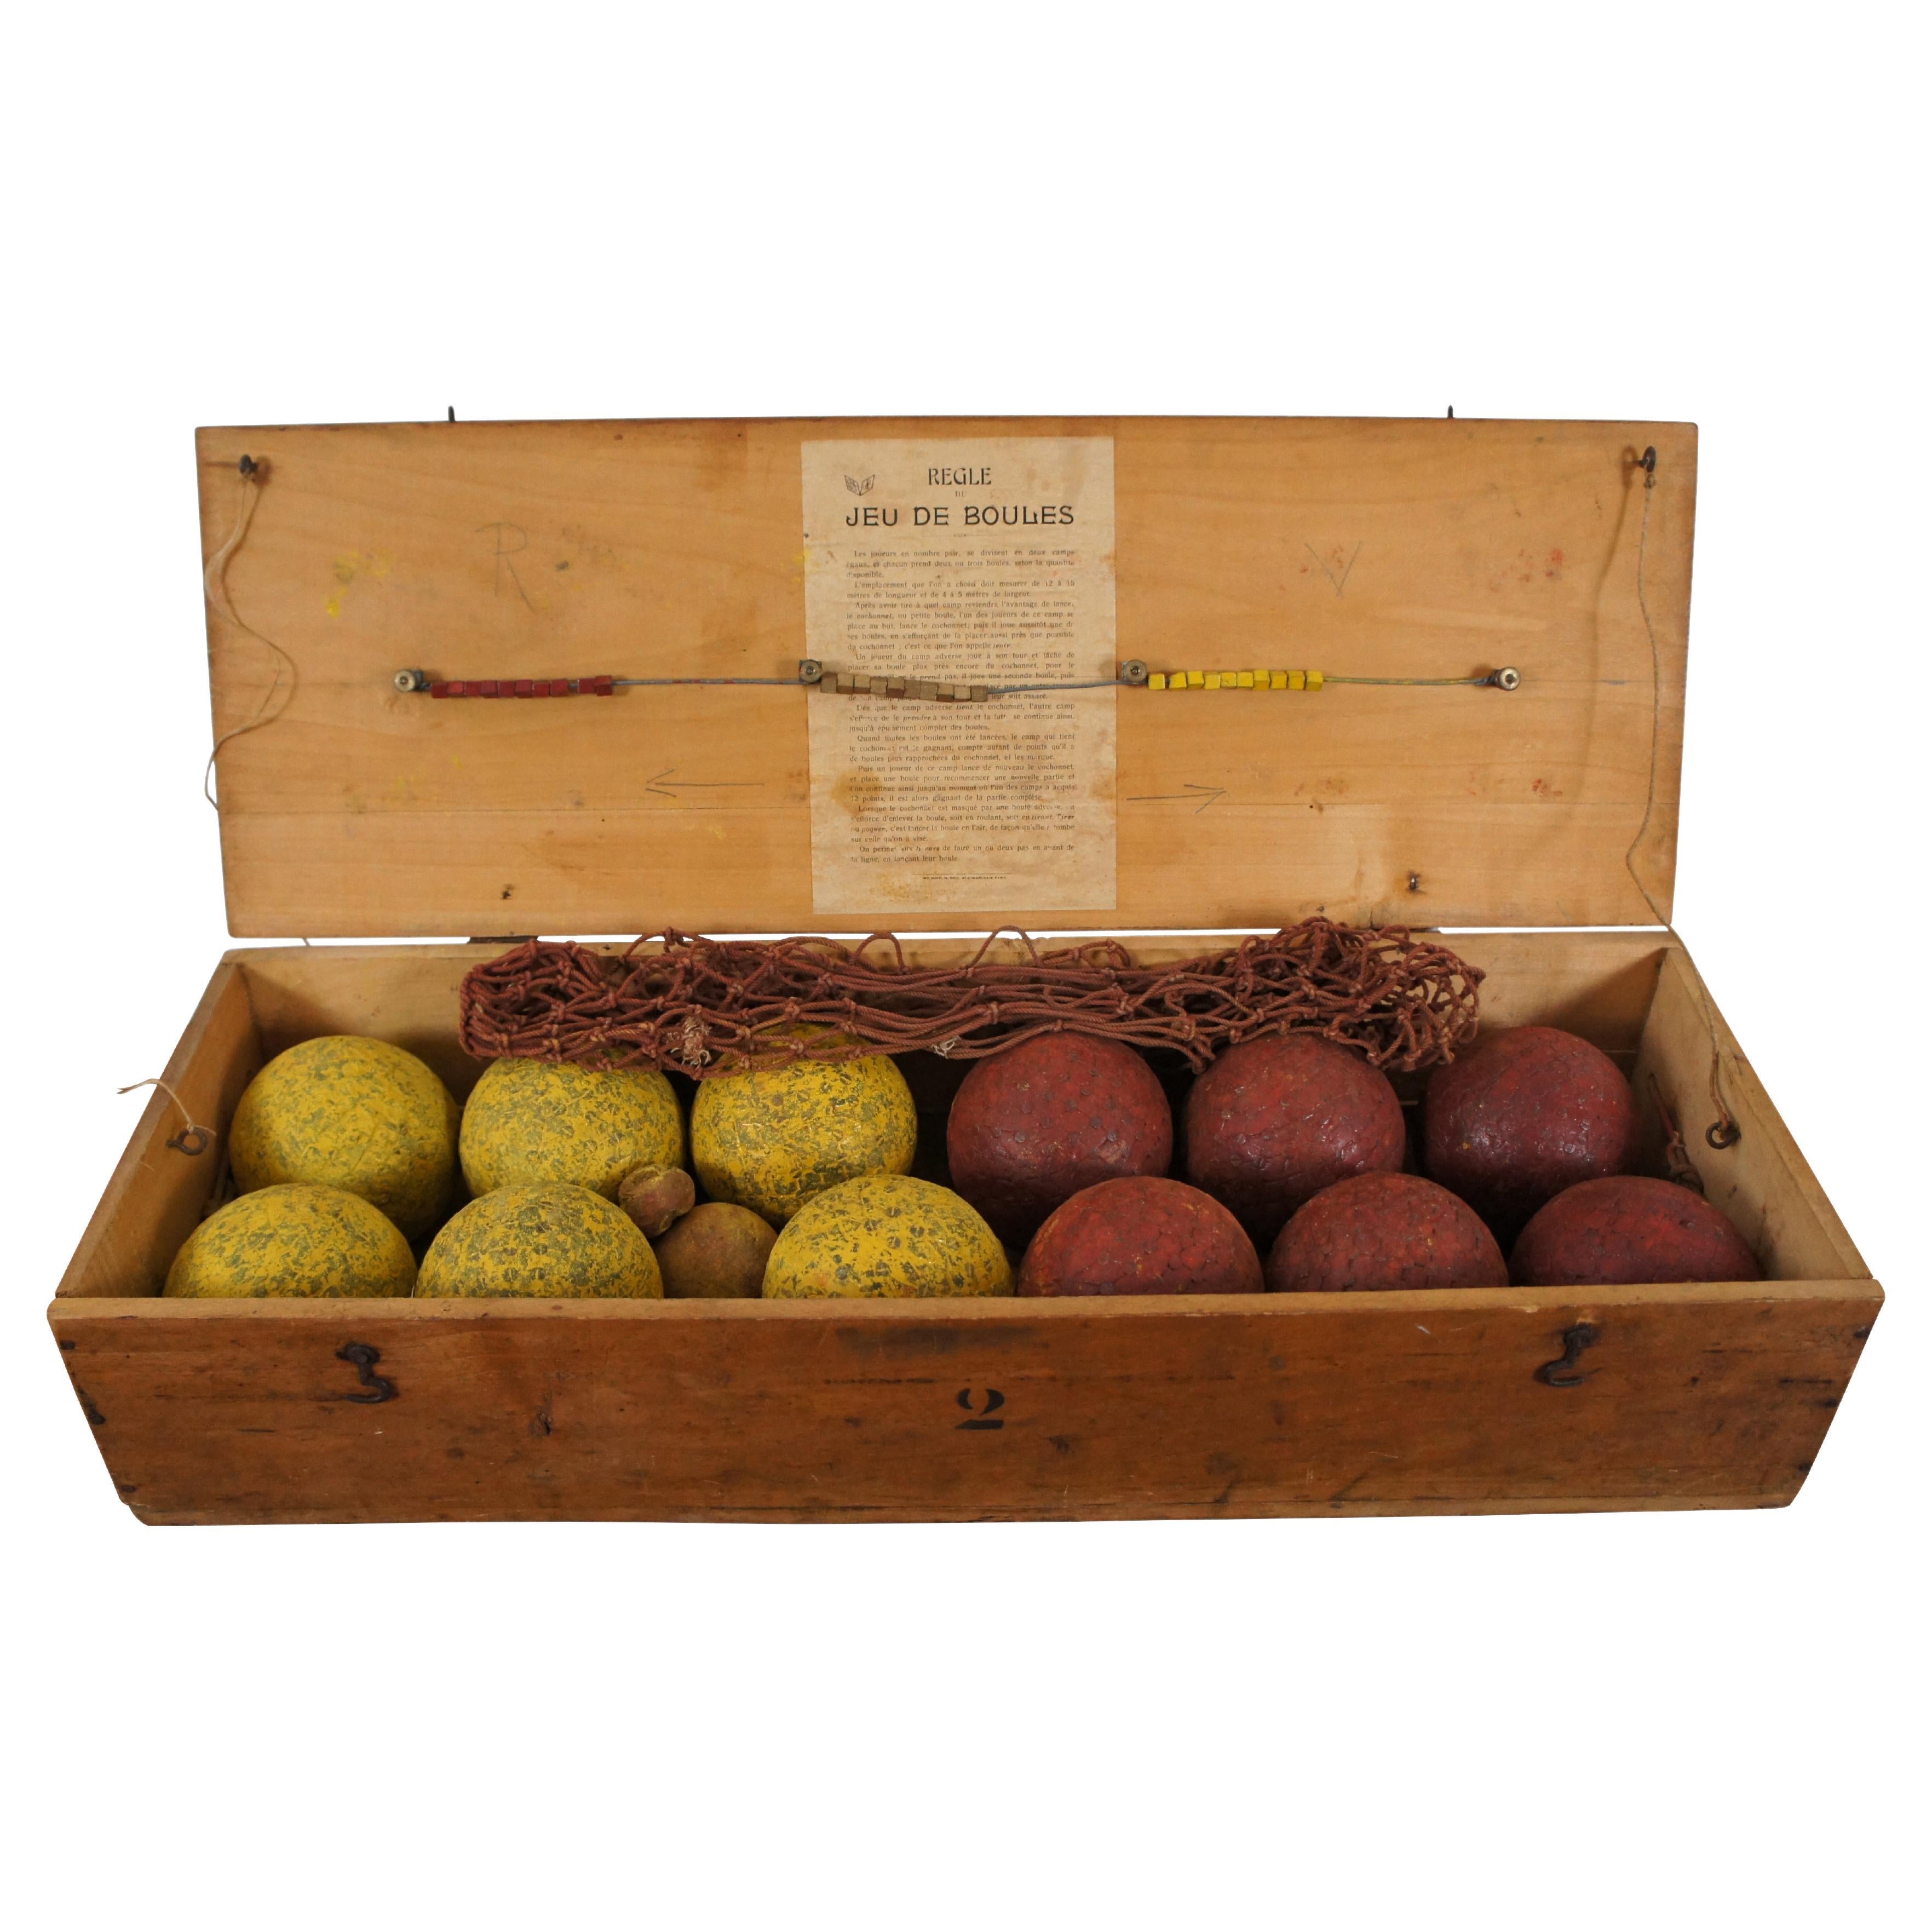 Rare Antique French Petanque Jeu de Boules Lawn Bowling Ball Game Set & Box For Sale